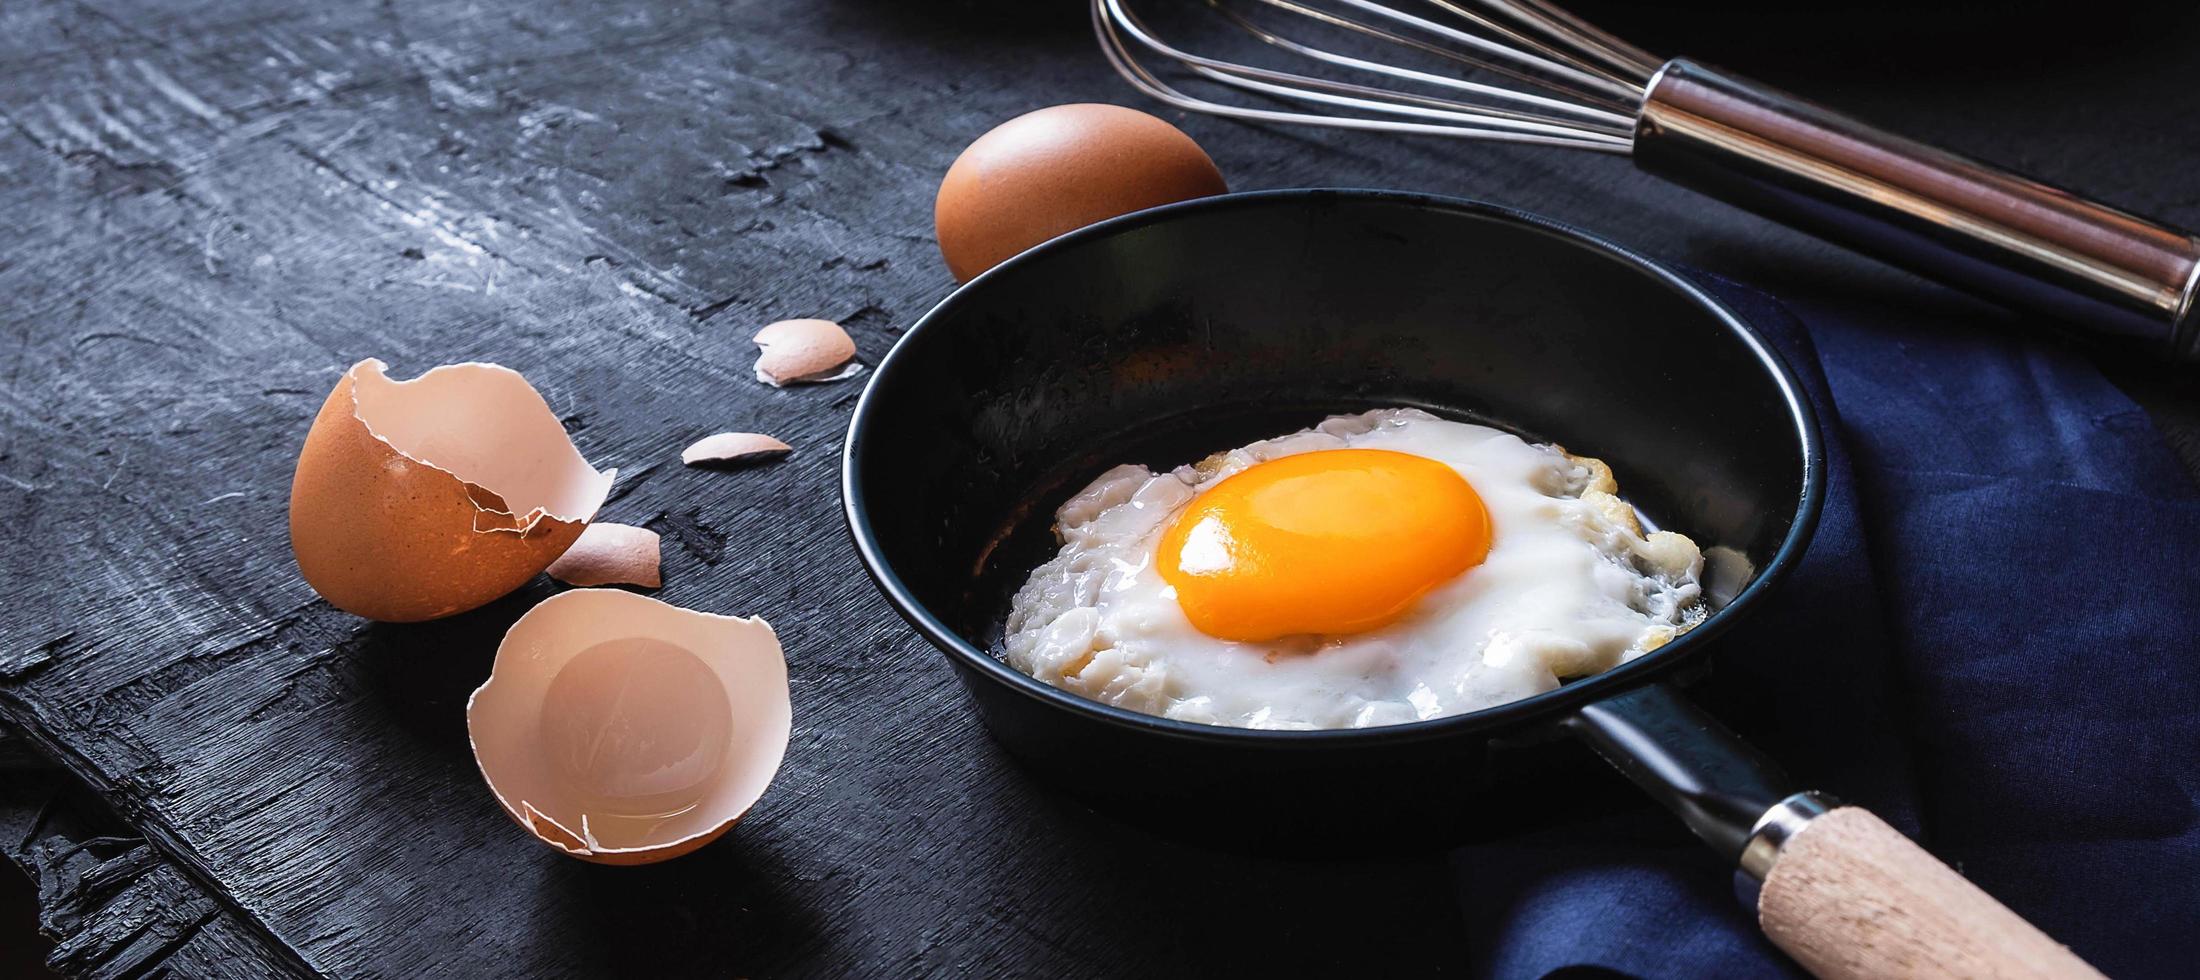 menú de cocina en la cocina huevo frito huevo en la sartén y huevos crudos frescos sobre fondo de madera negra foto